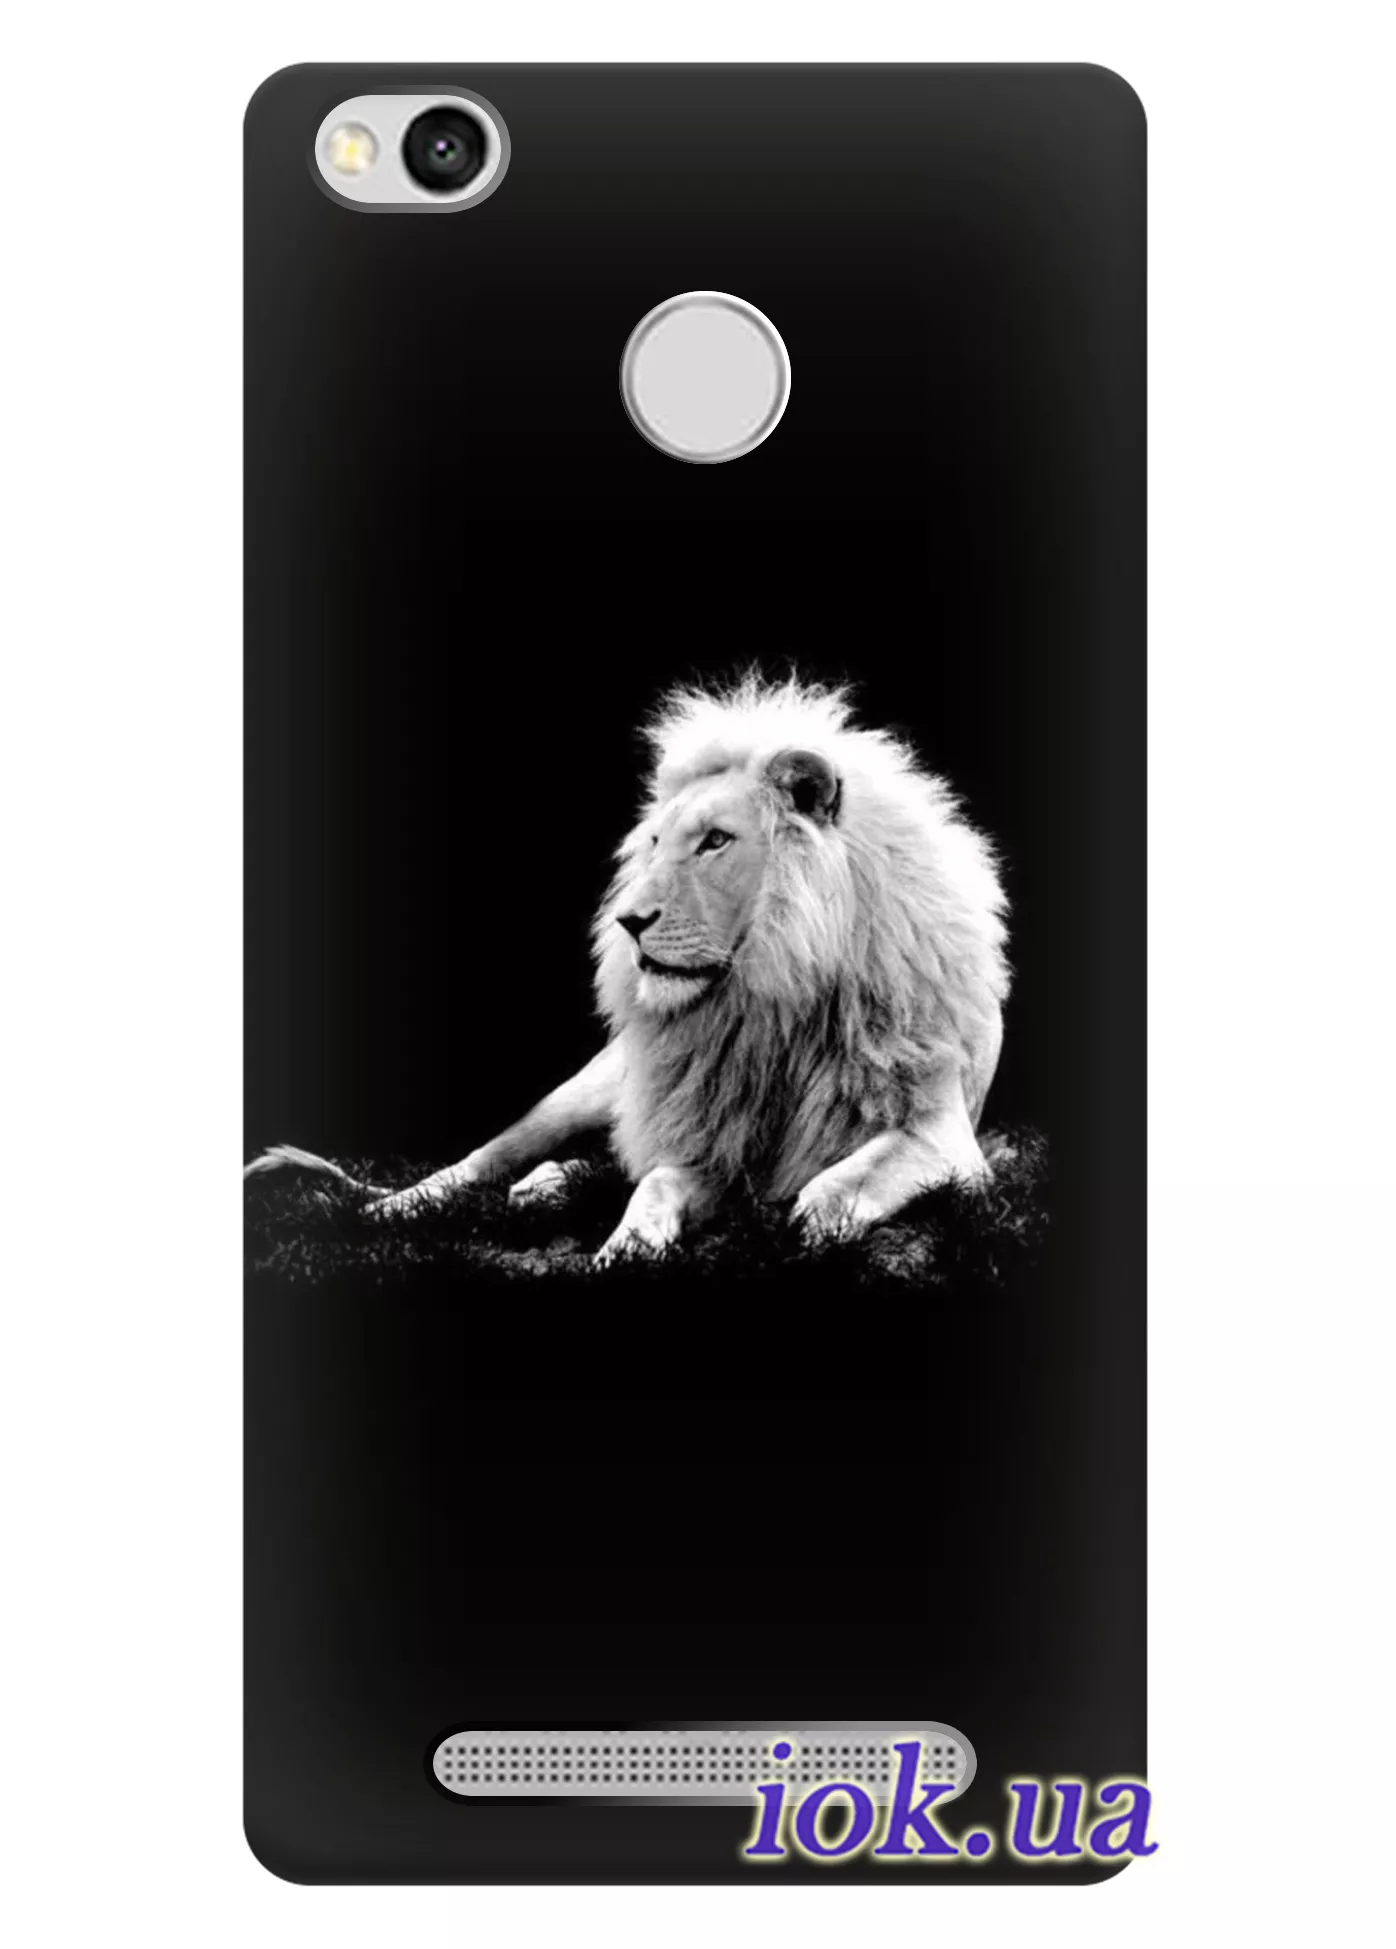 Xiaomi Redmi 3X - Спокойный лев